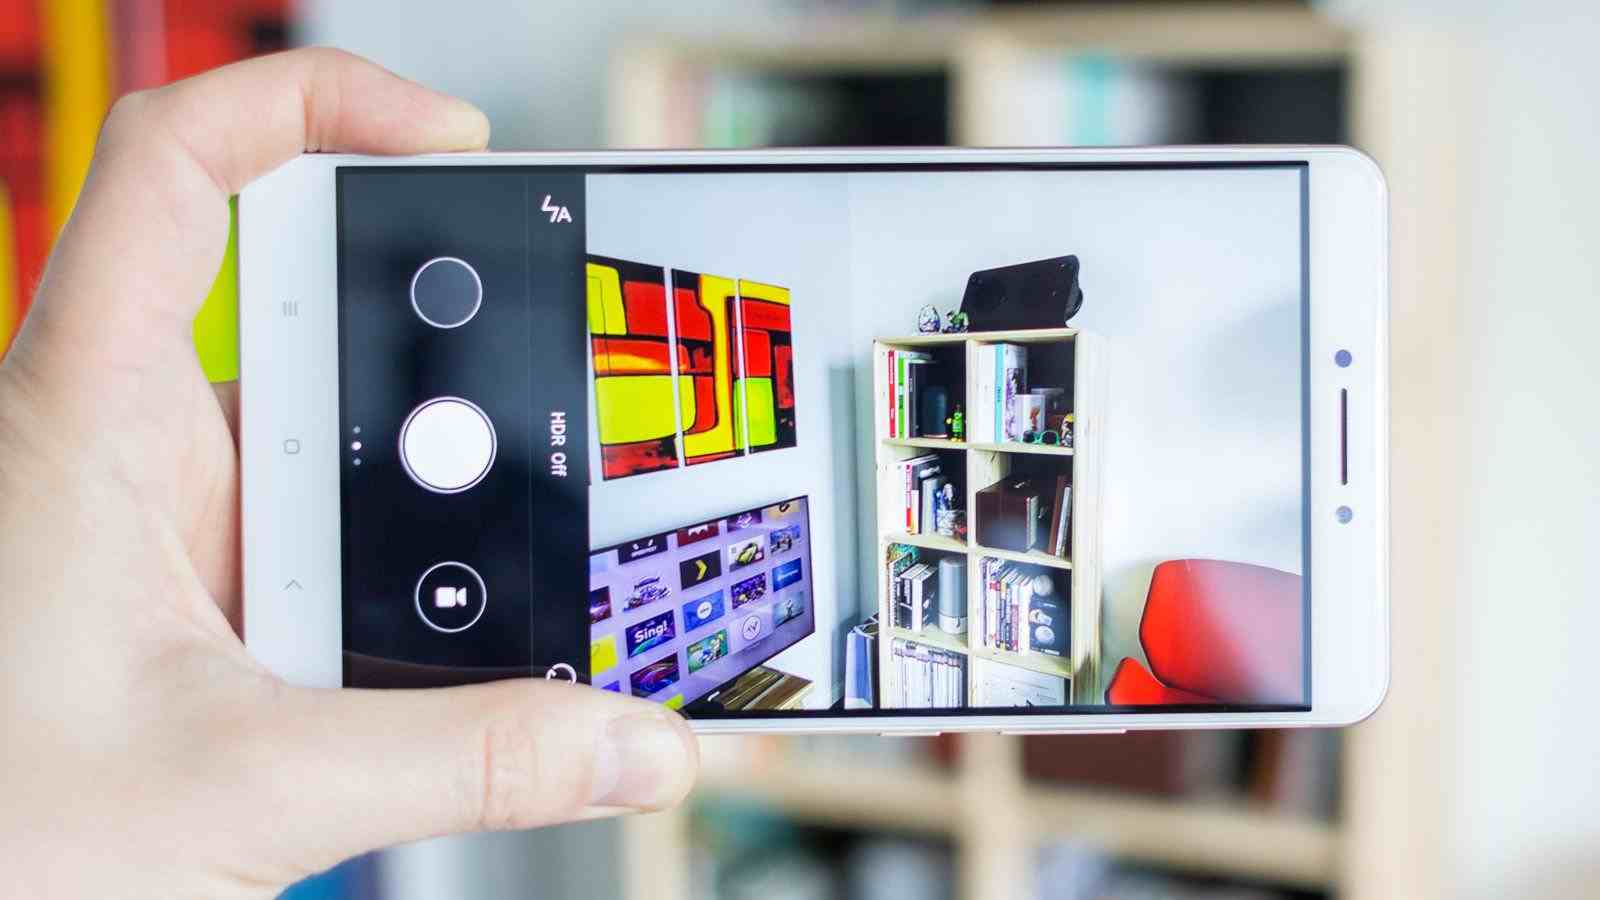 Review Terbaru Xiaomi Mi Max dan Harga - Review Smartphone 